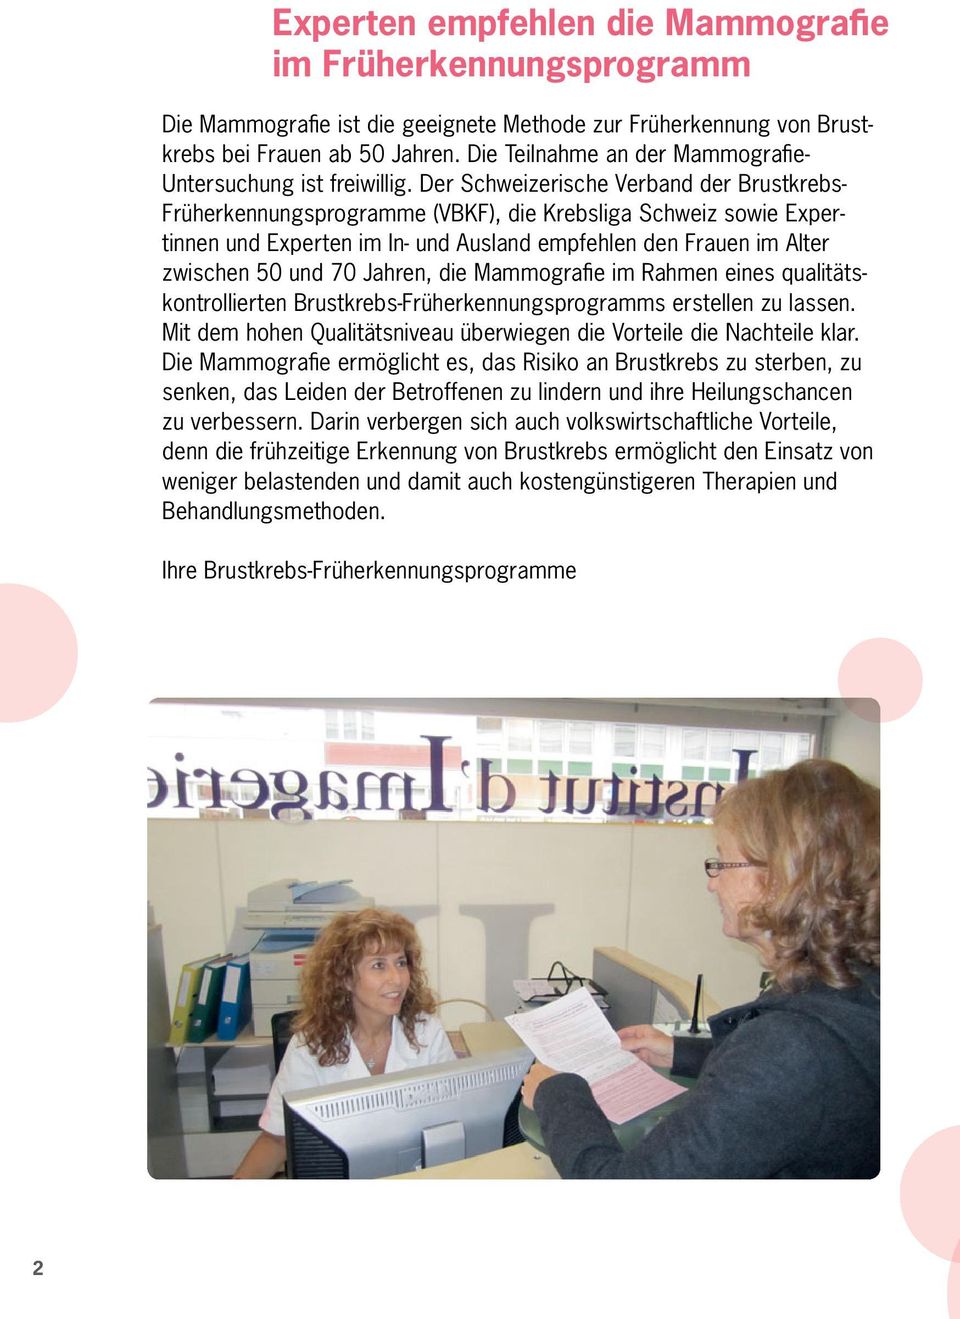 Der Schweizerische Verband der Brustkrebs- Früherkennungsprogramme (VBKF), die Krebsliga Schweiz sowie Expertinnen und Experten im In- und Ausland empfehlen den Frauen im Alter zwischen 50 und 70